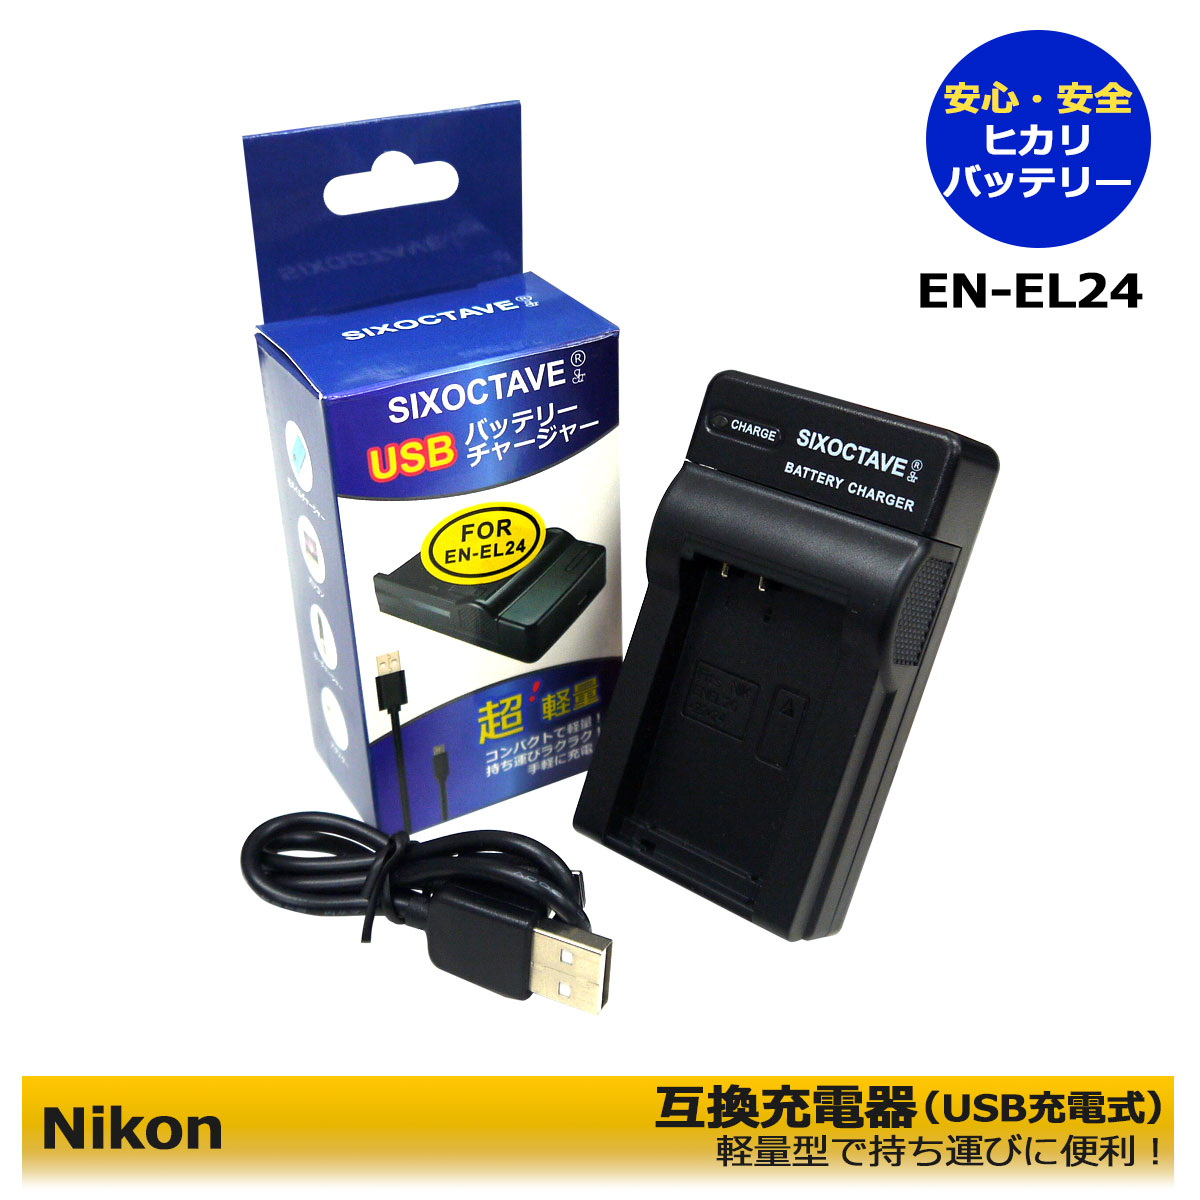 新しいスタイル ニコン EN-EL24 ENEL24 Micro USB付き 急速充電器 互換品